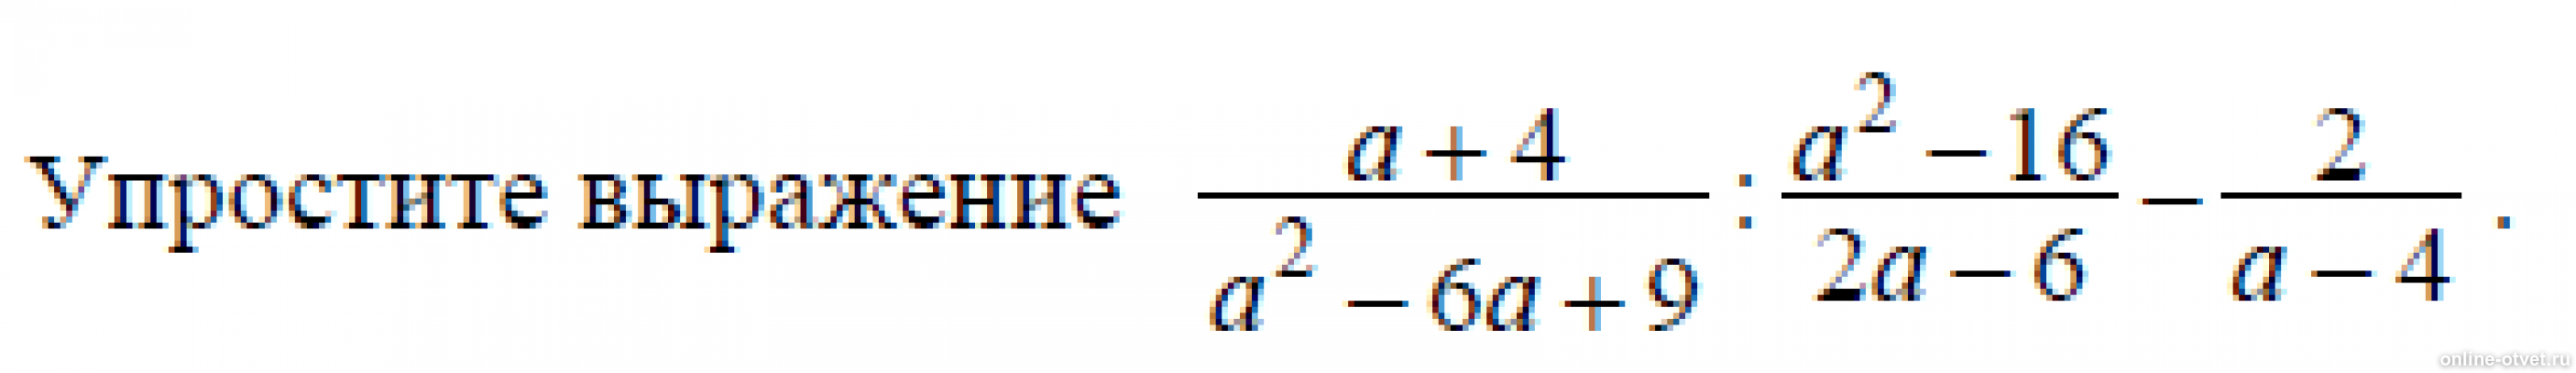 A-4/A^2+4+16 упростить выражение. Упростите выражения (a-8)^2. Упростите выражения а+2 а-3-4-а а+4. Упростите выражение 4a/a^2-4 * a+2/2a.